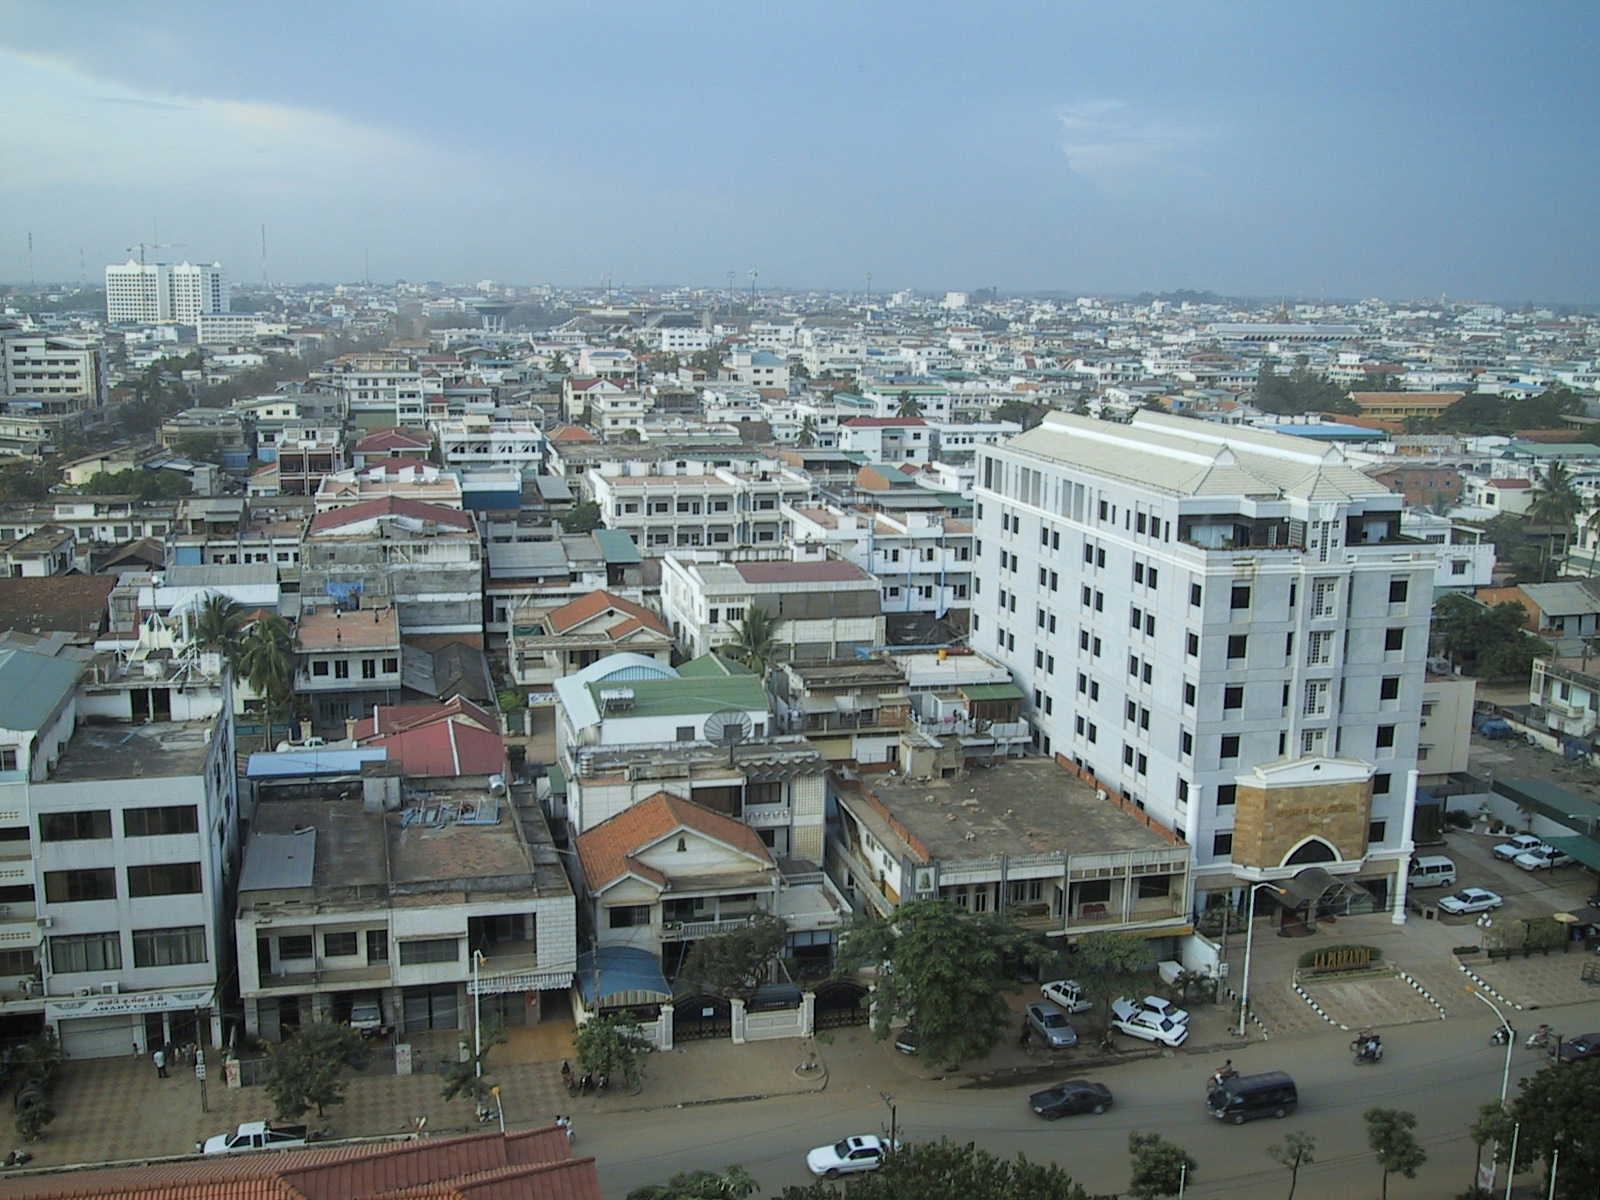 Phnom Penh in all its sprawling glory